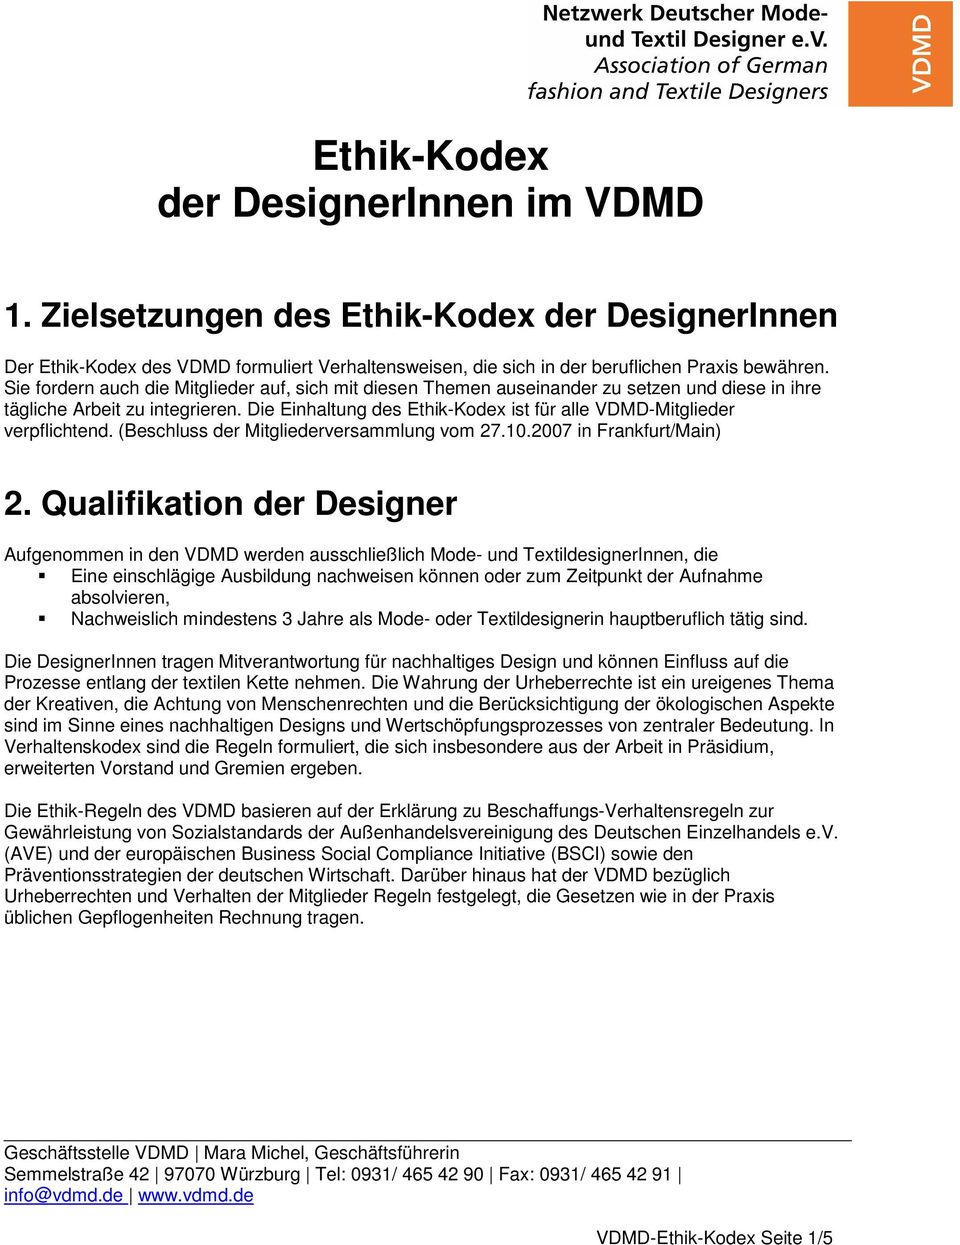 Die Einhaltung des Ethik-Kodex ist für alle VDMD-Mitglieder verpflichtend. (Beschluss der Mitgliederversammlung vom 27.10.2007 in Frankfurt/Main) 2.